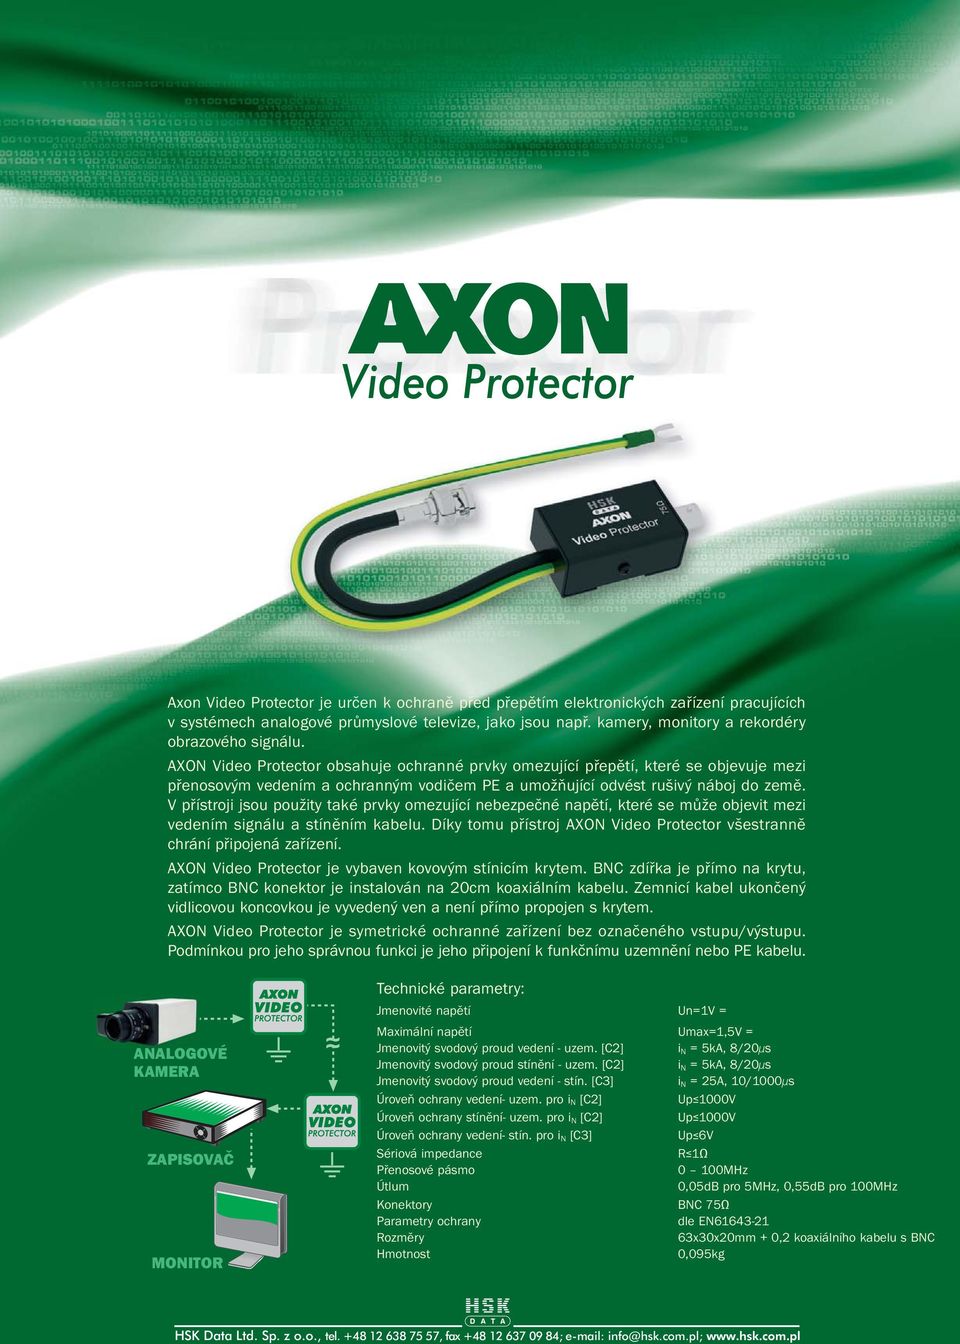 AXON Video Protector obsahuje ochranné prvky omezující pøepìtí, které se objevuje mezi pøenosovým vedením a ochranným vodièem PE a umožòující odvést rušivý náboj do zemì.